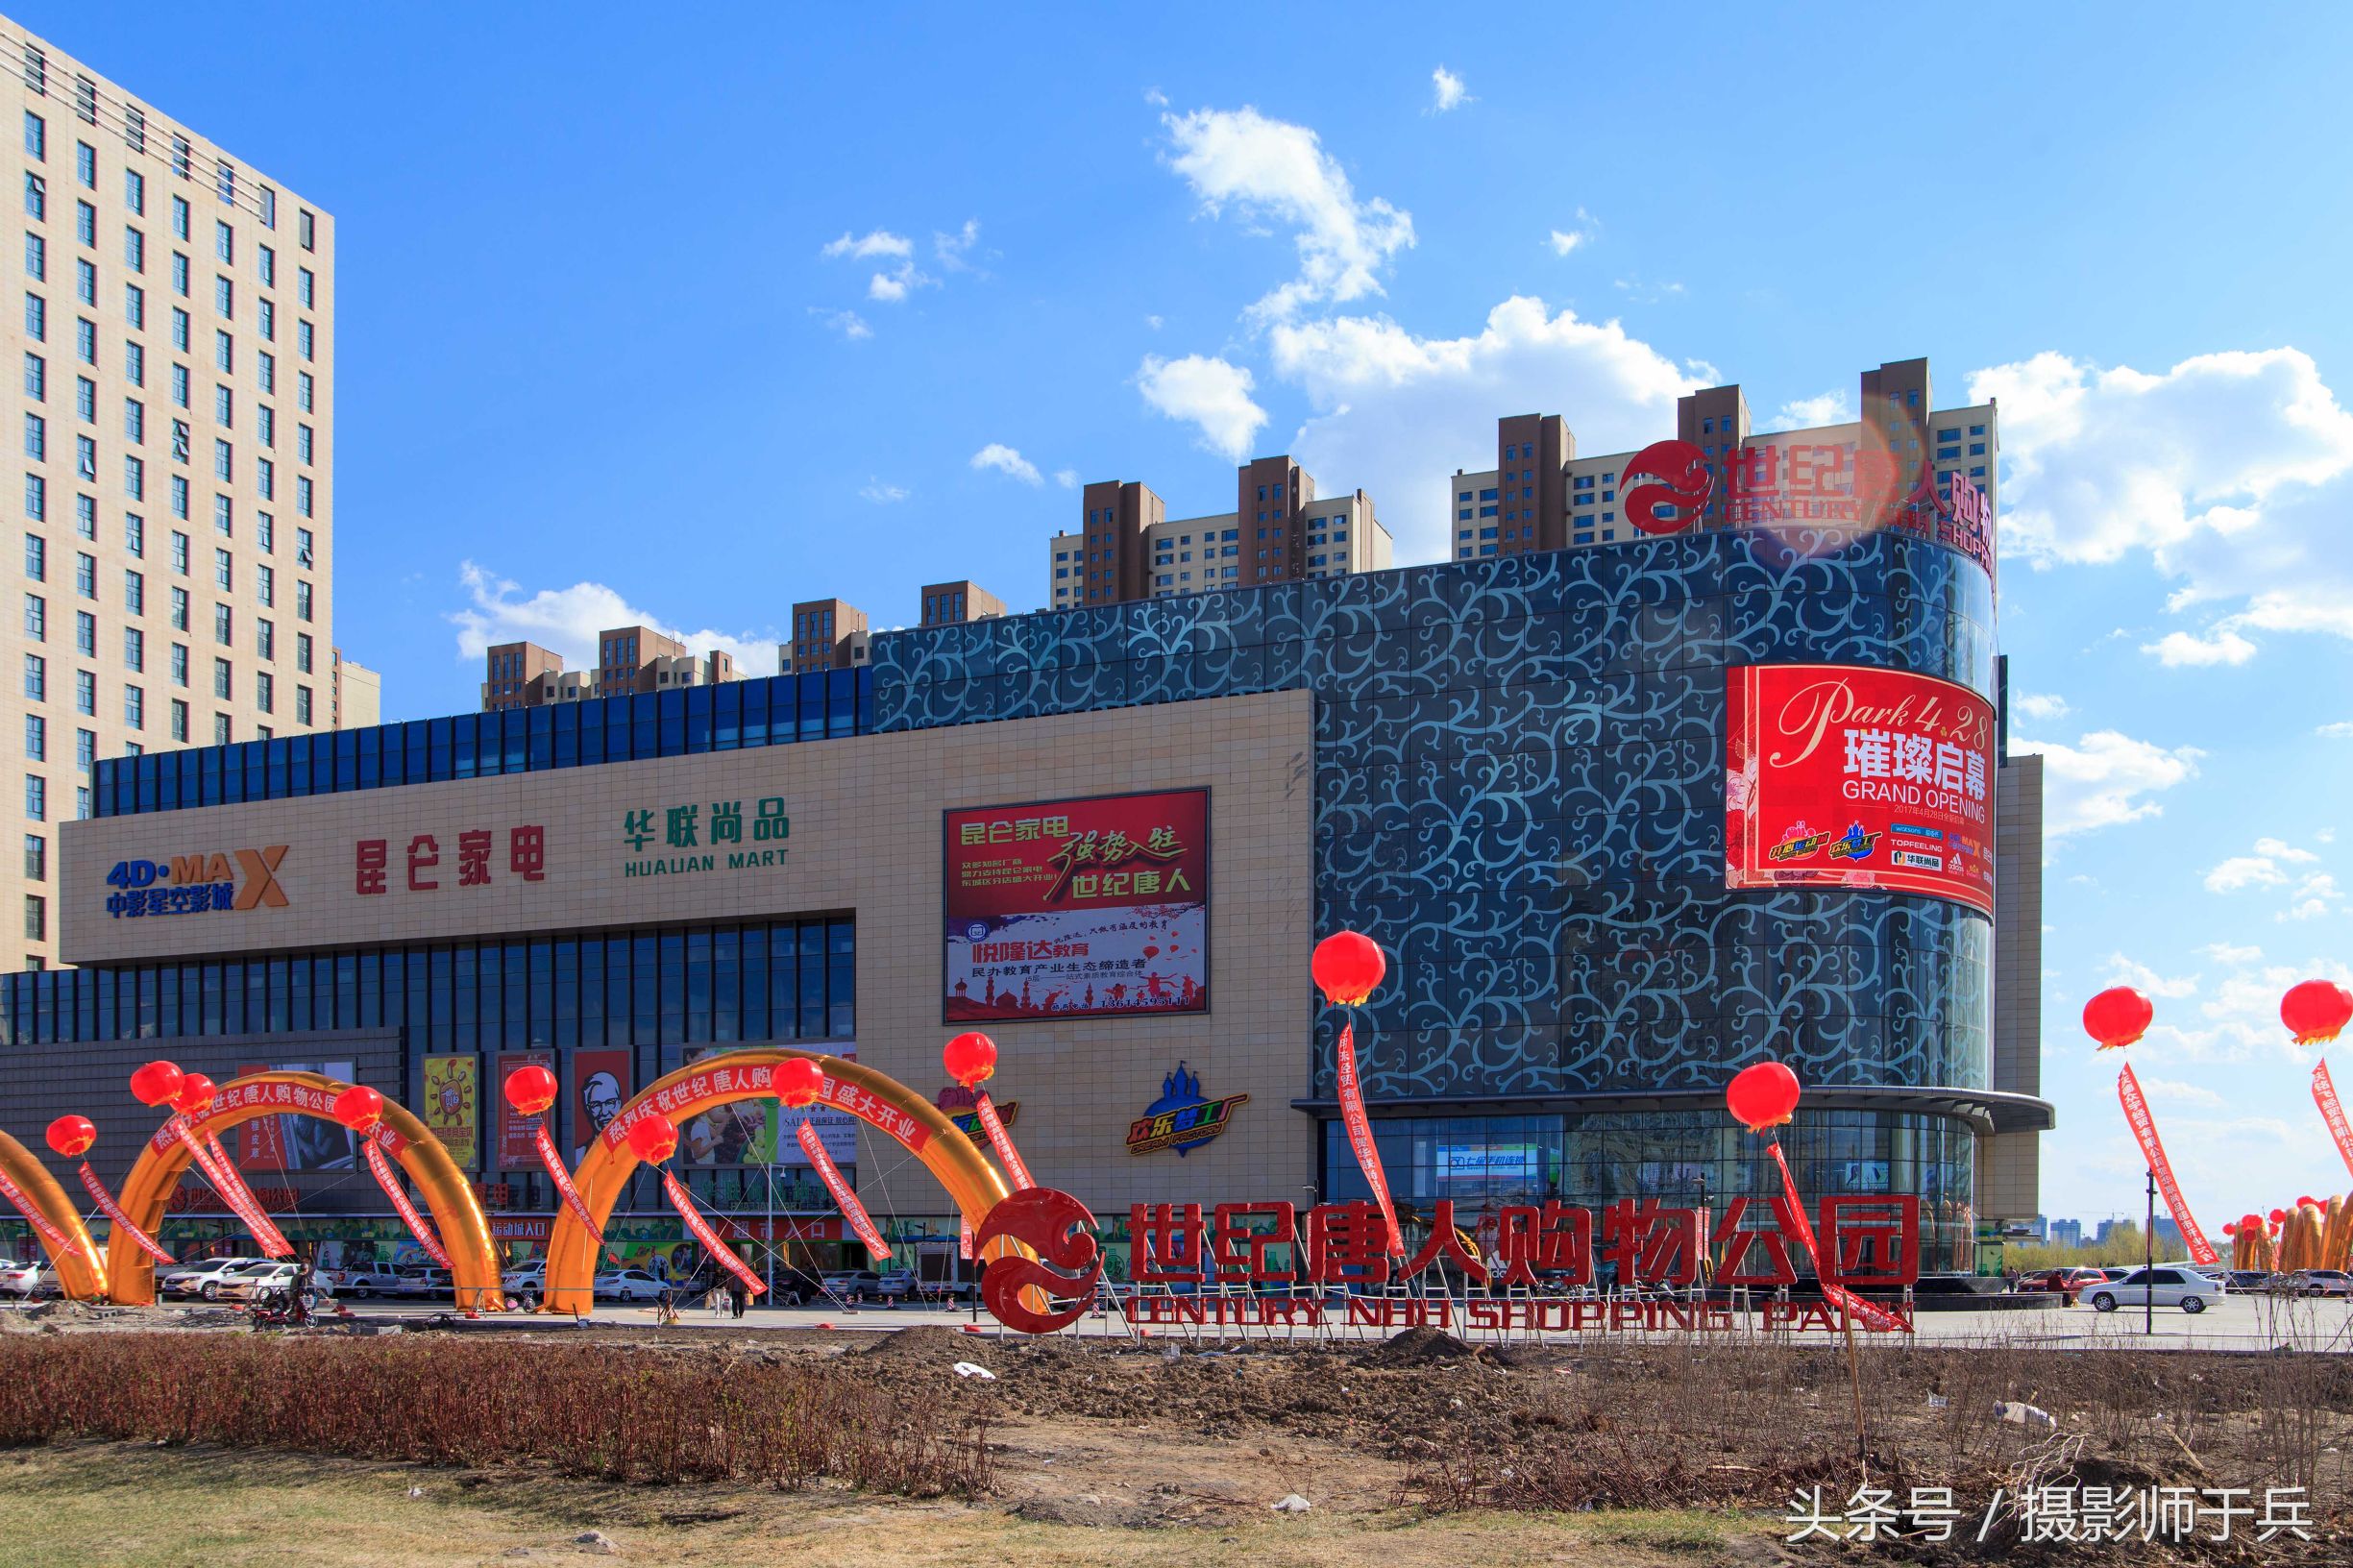 号称“全情景式-主题购物公园”的大庆世纪唐人购物公园开业了